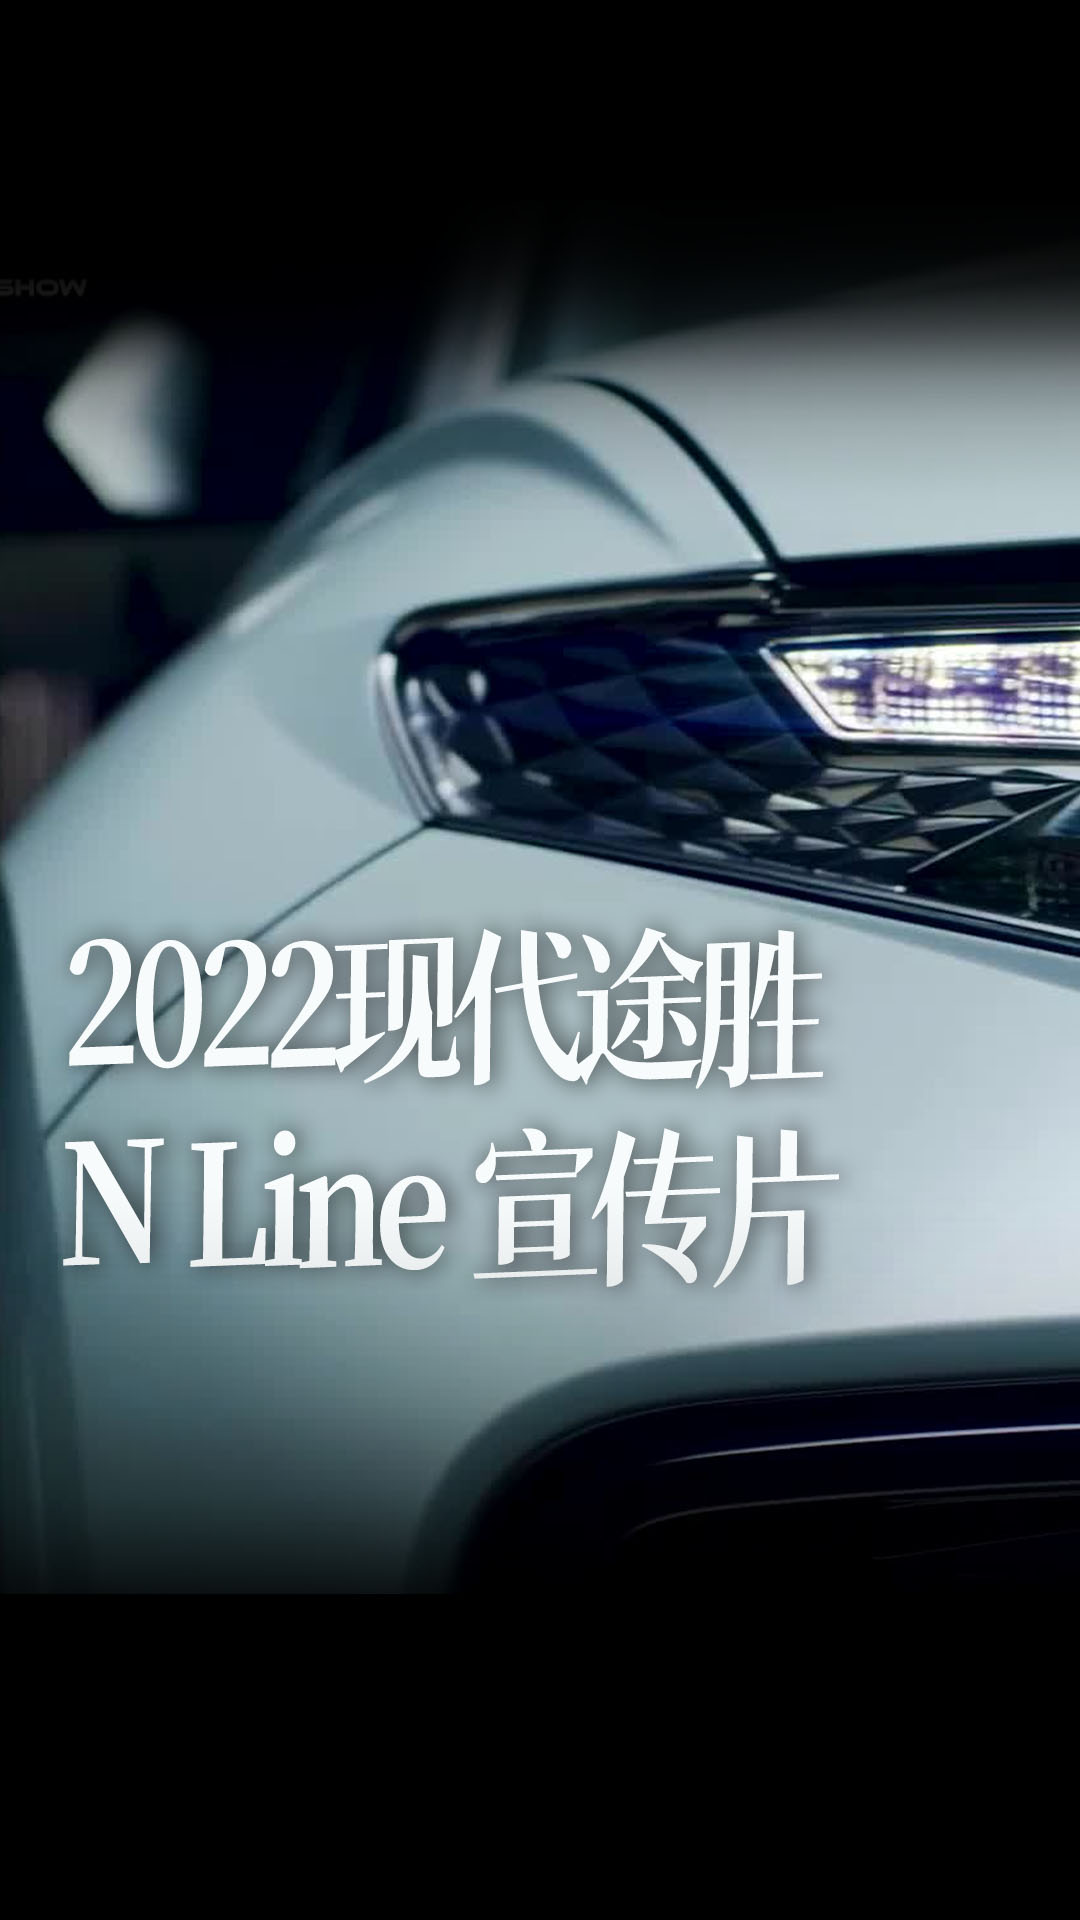 2022现代途胜 N Line 完整宣传片，集中展示了新车的特性